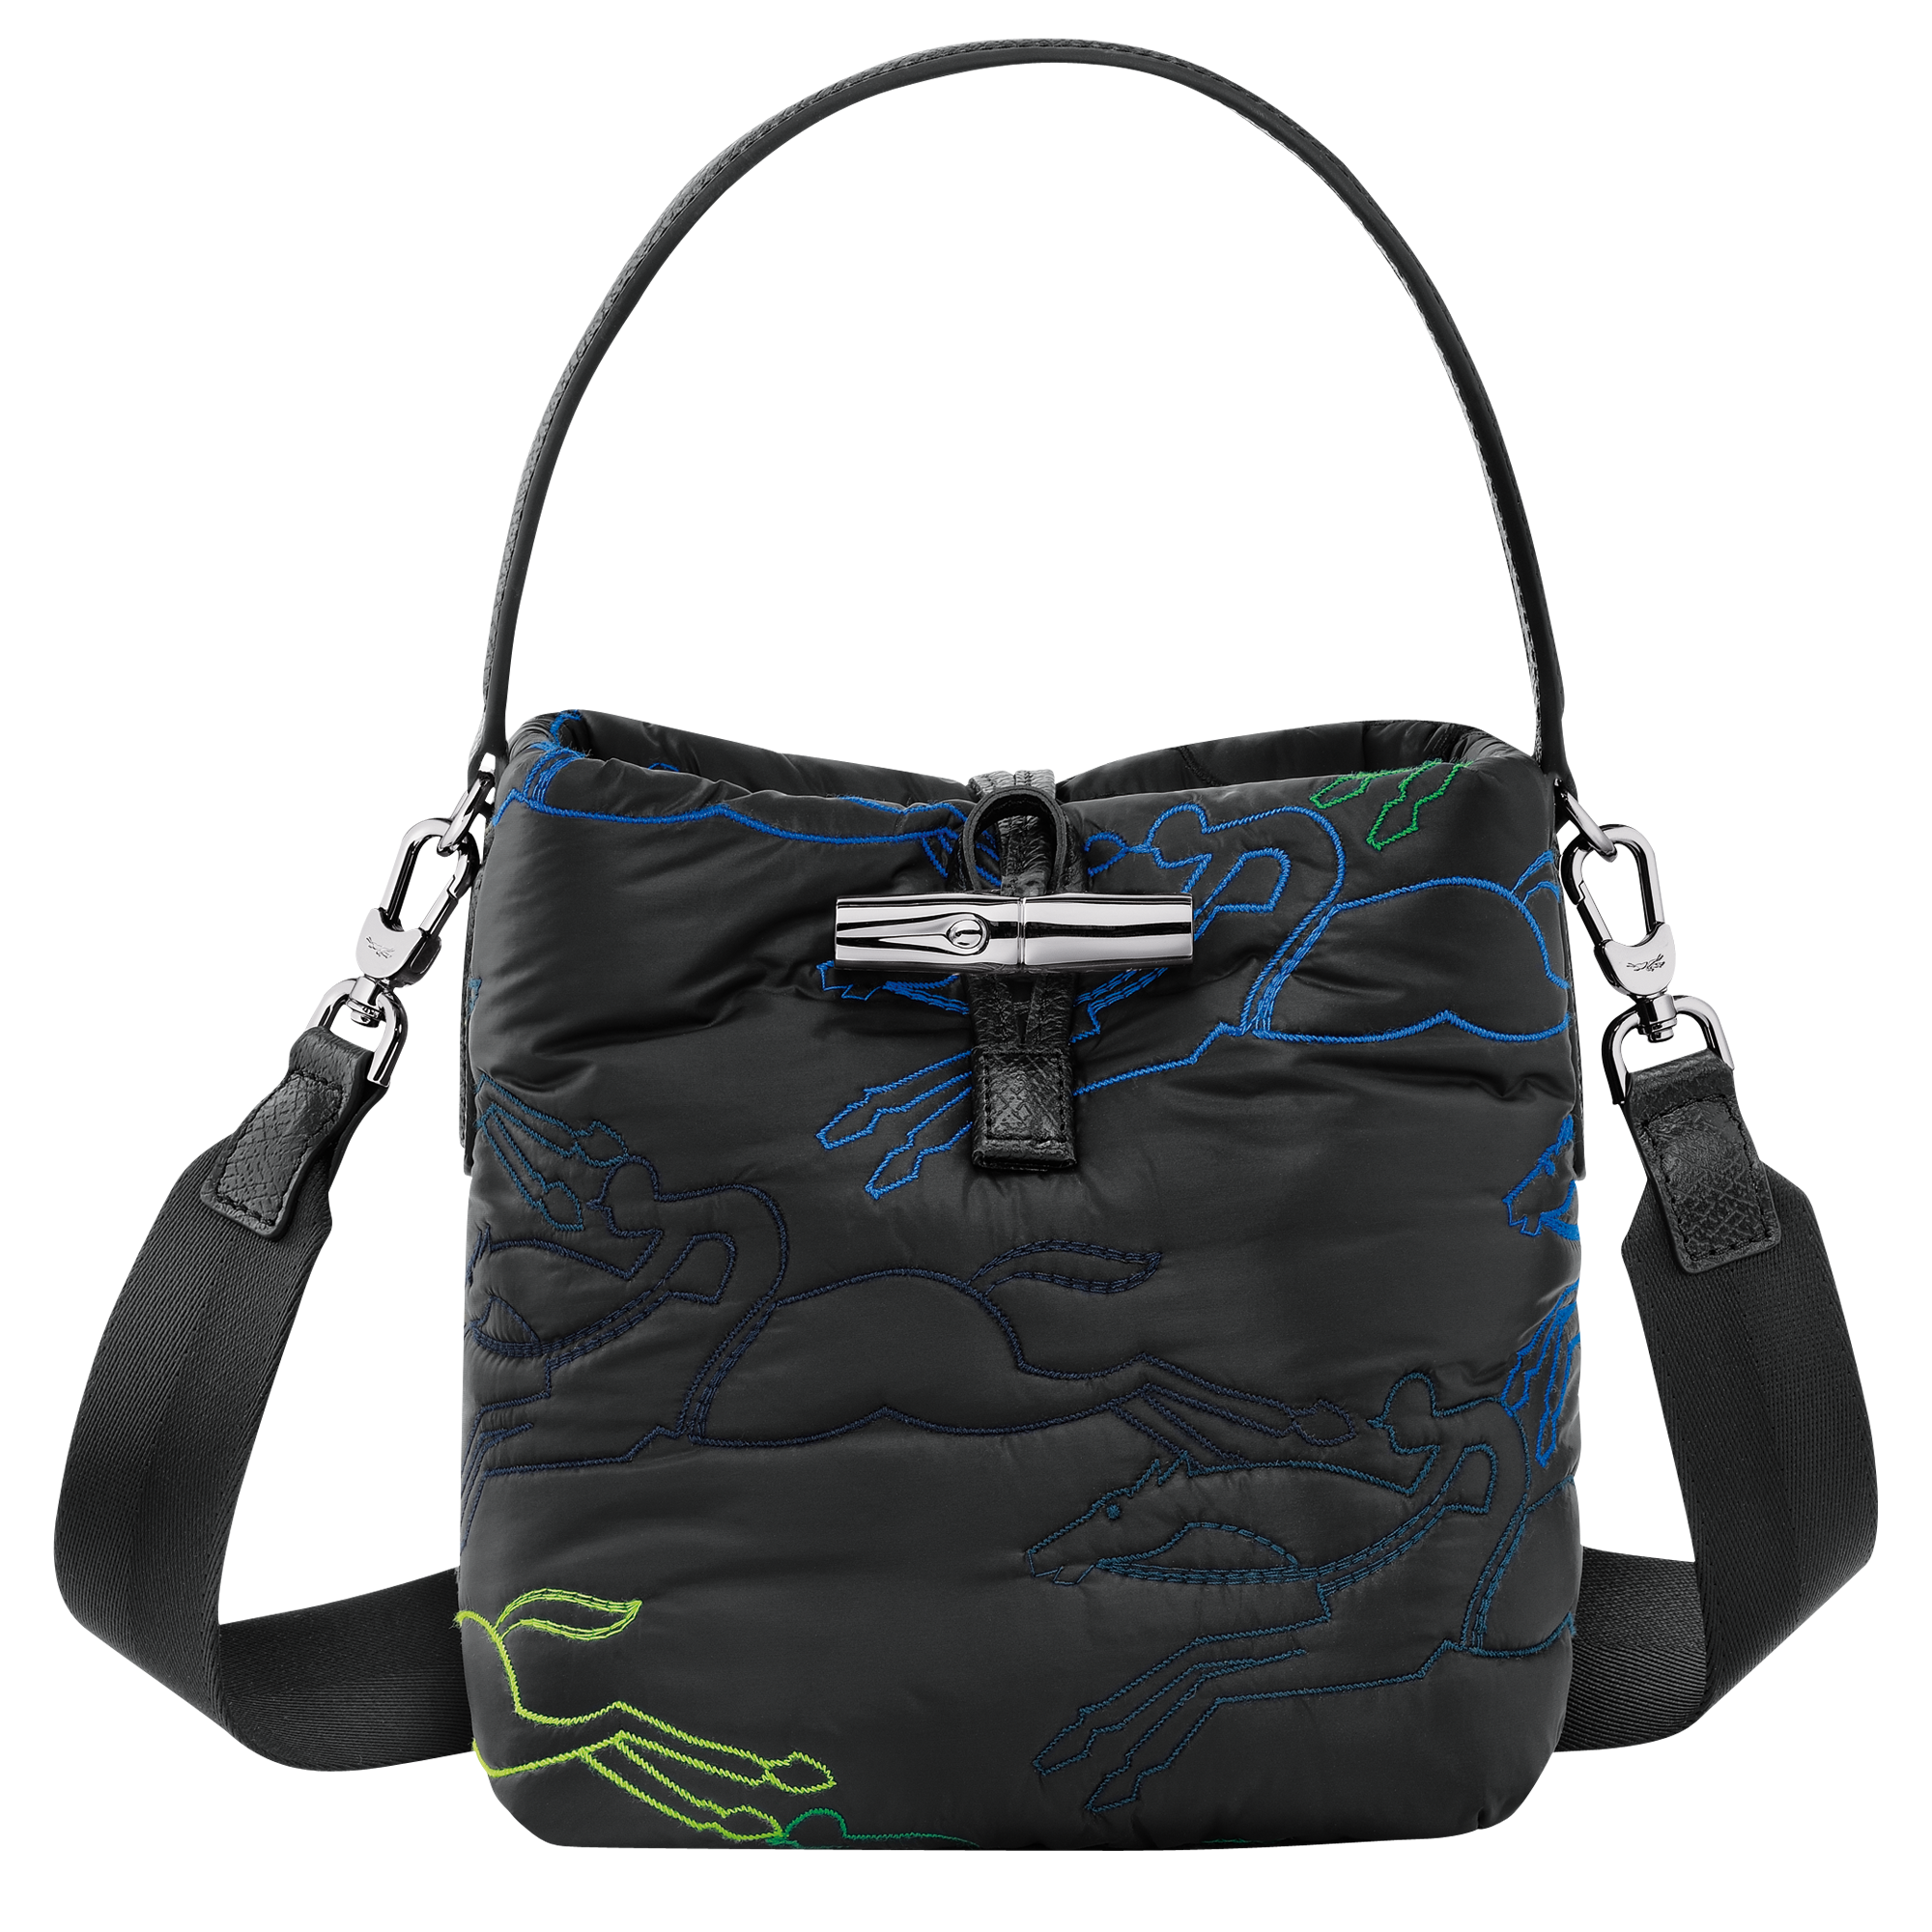 Le Pliage Xtra S Hobo bag Turtledove - Leather (10210987P55